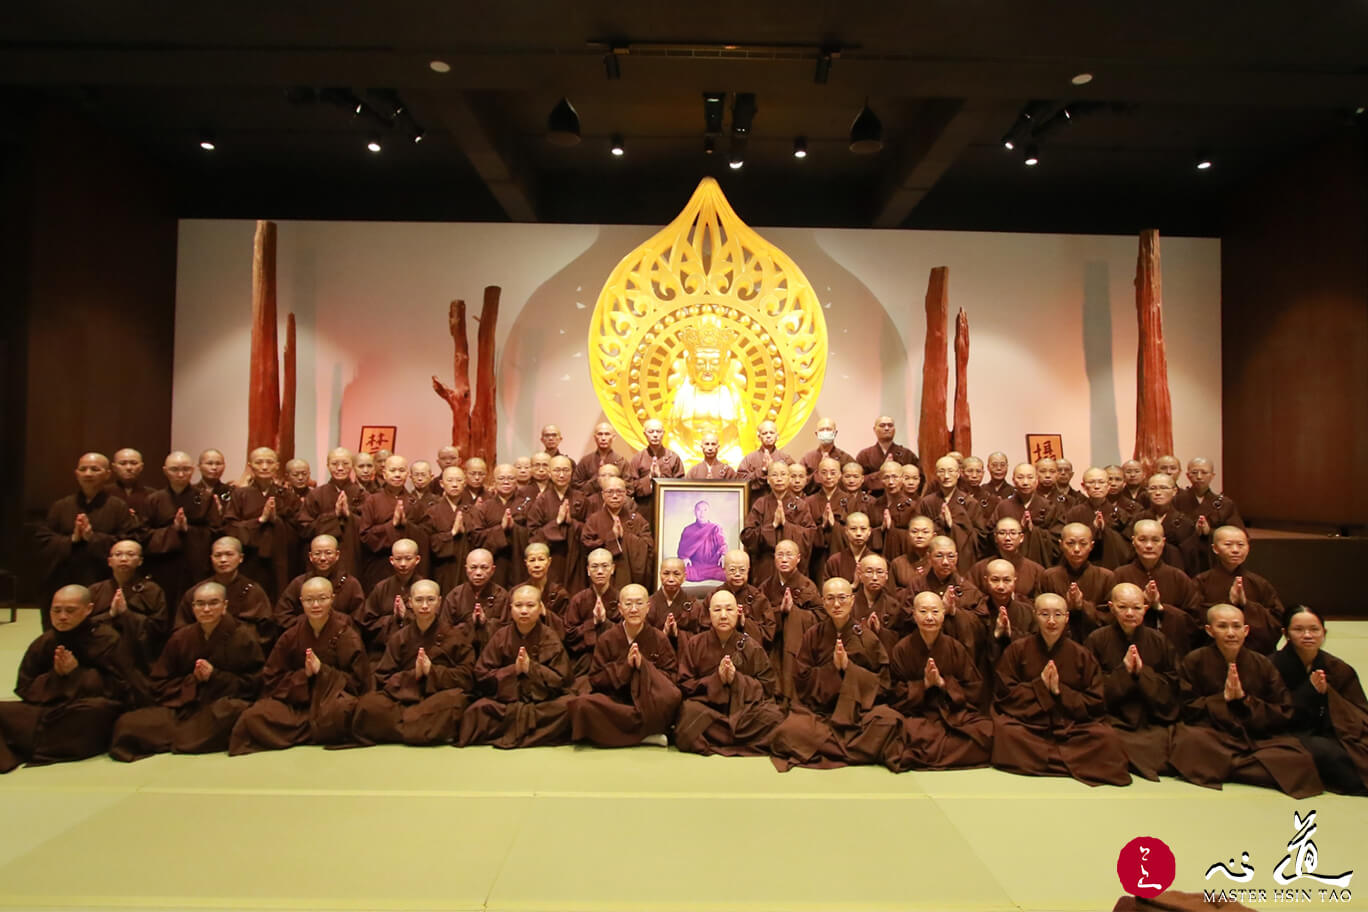 Summer Term Monastic Retreat – Abiding in the Original Face-MasterHsinTao